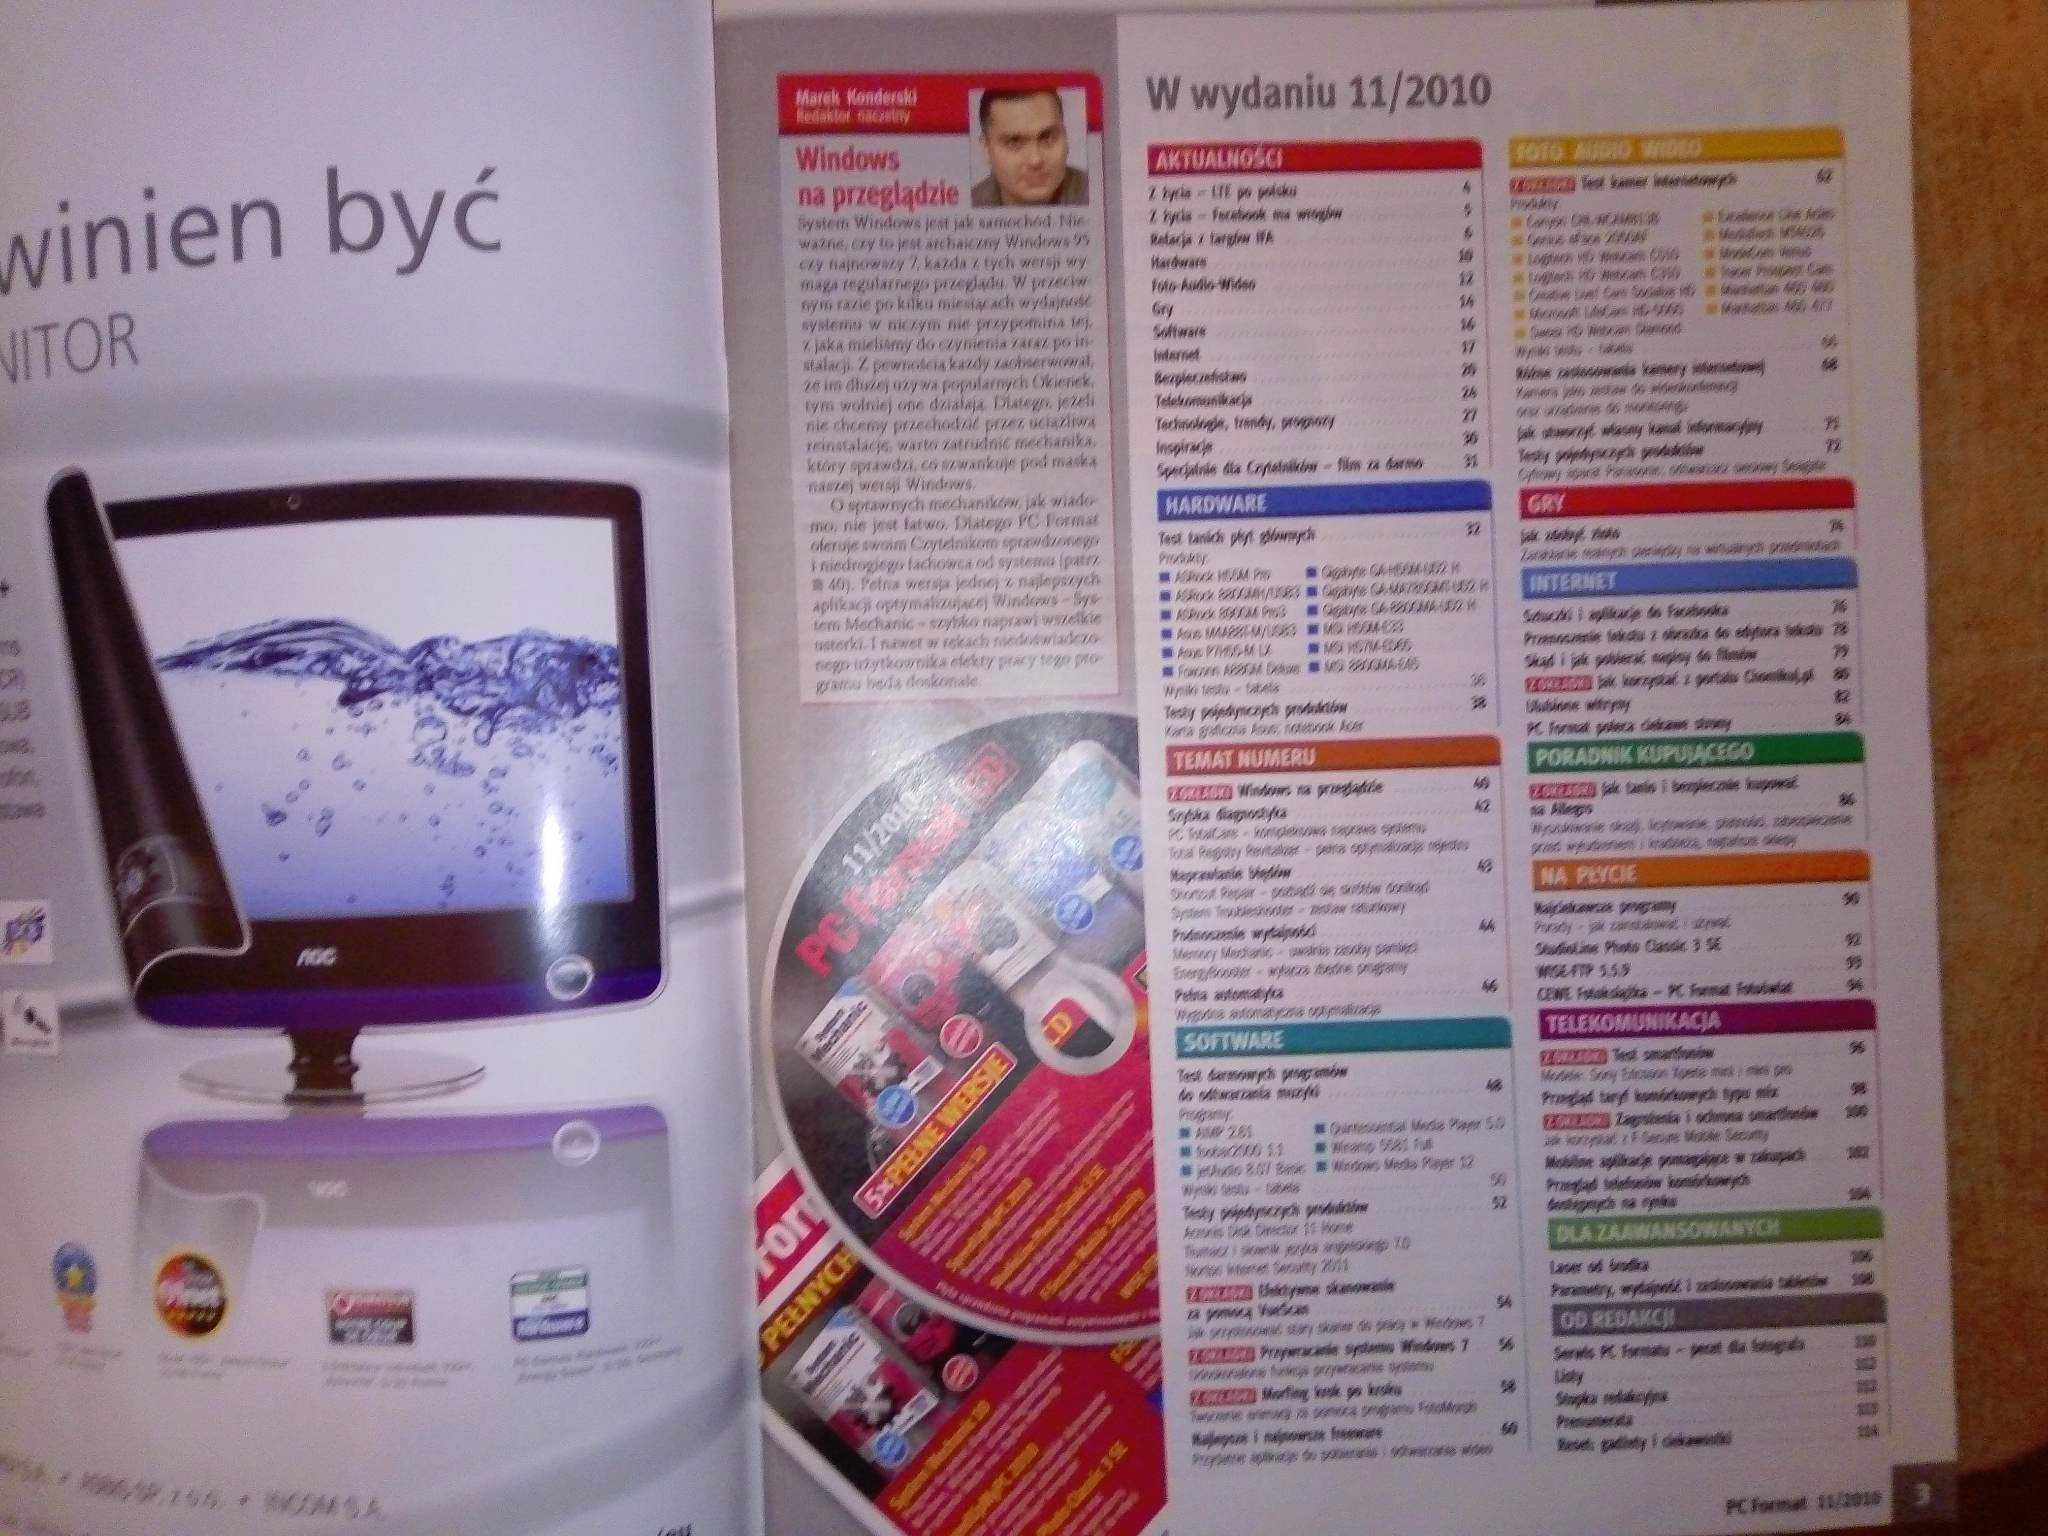 PC Format 11 2010 listopad (123) Gazeta + płyta CD Czasopismo